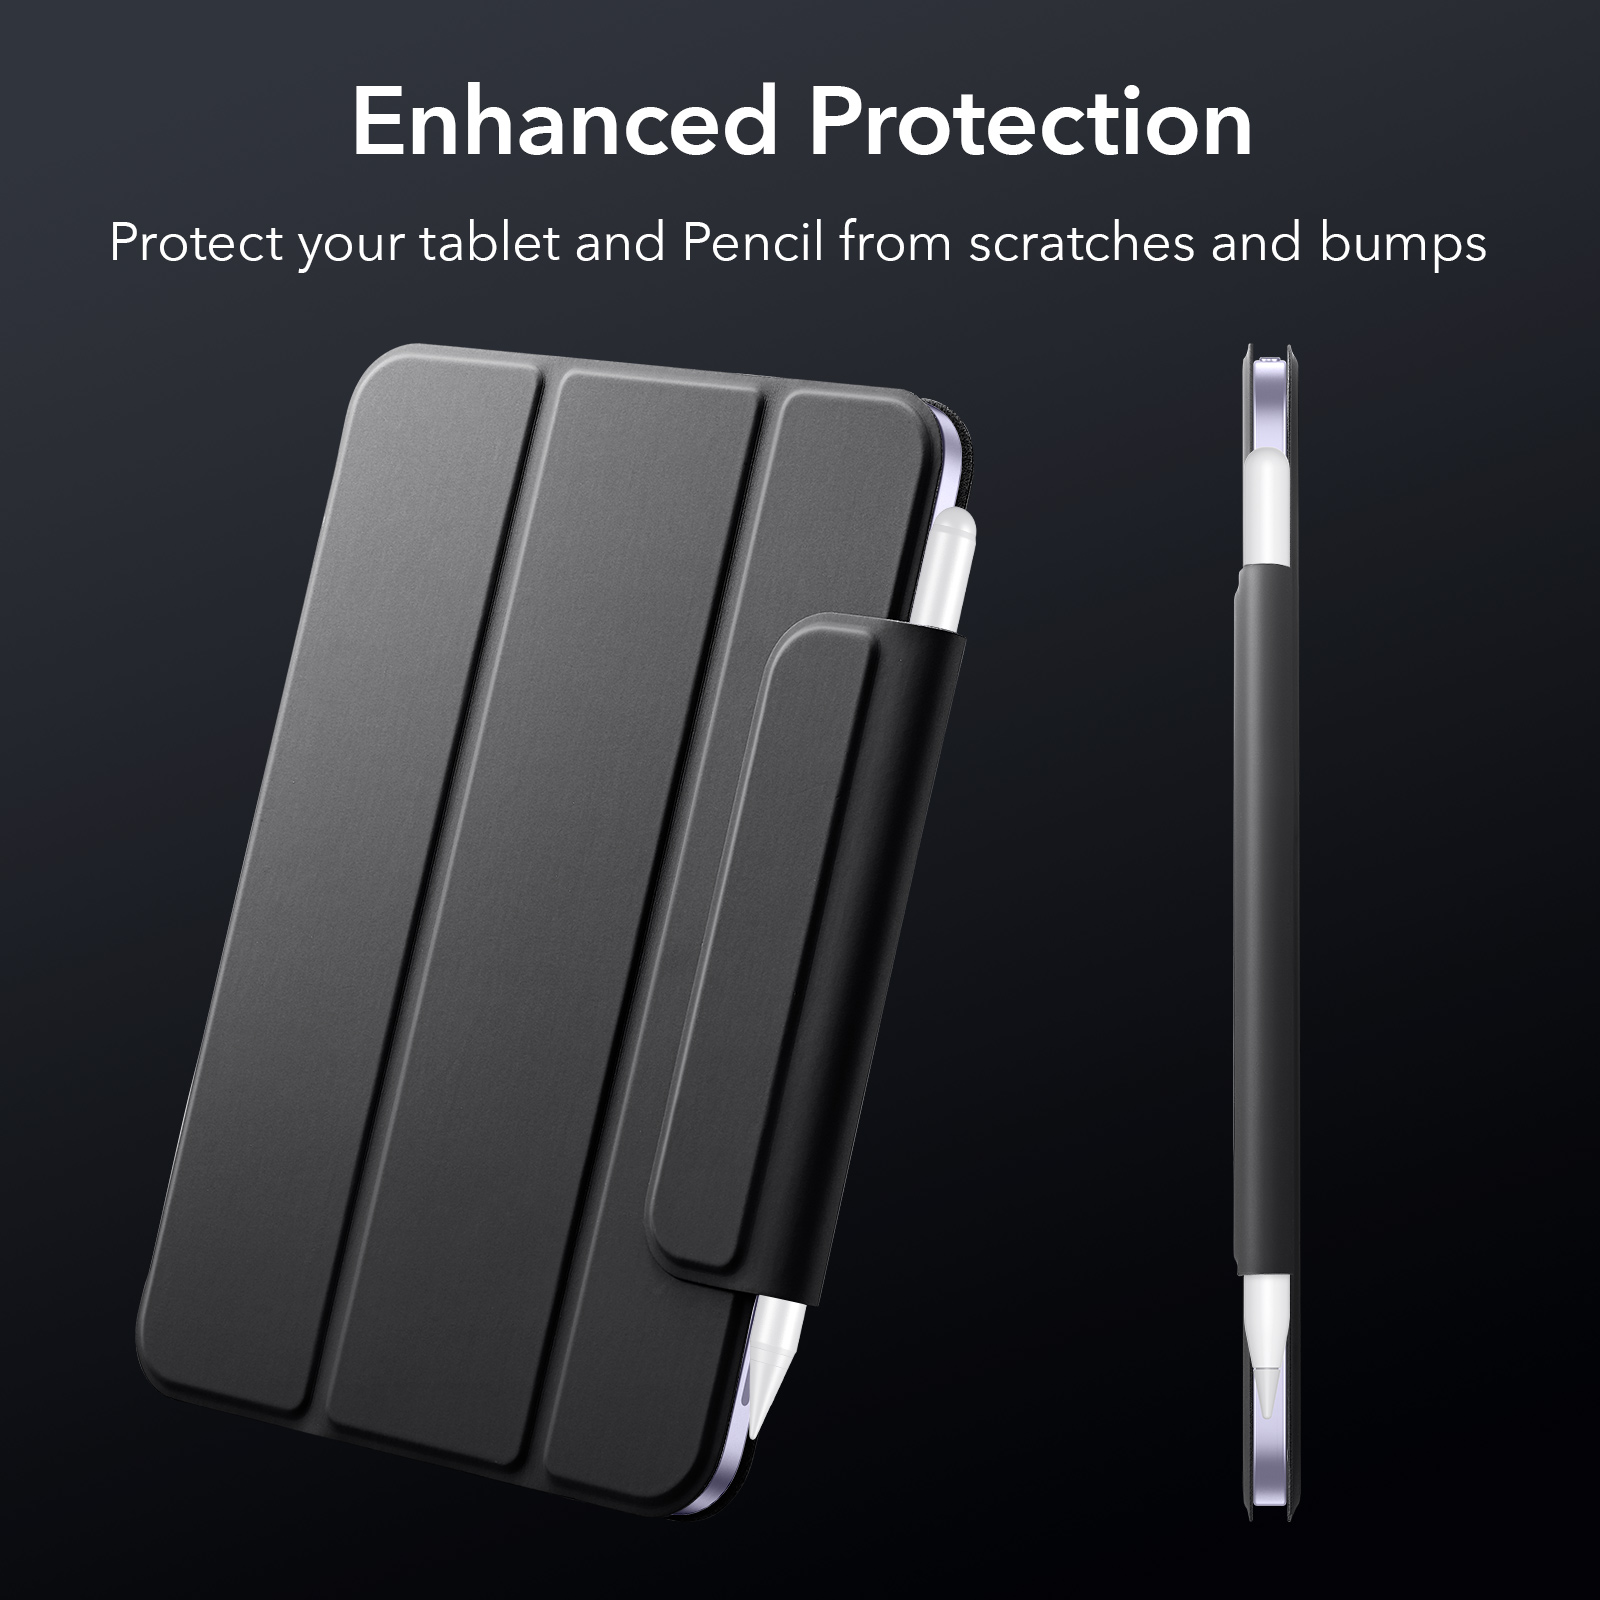 Bao Da Dành Cho iPad Mini 6 ESR Rebound Magnetic Slim Case - Hàng Chính Hãng